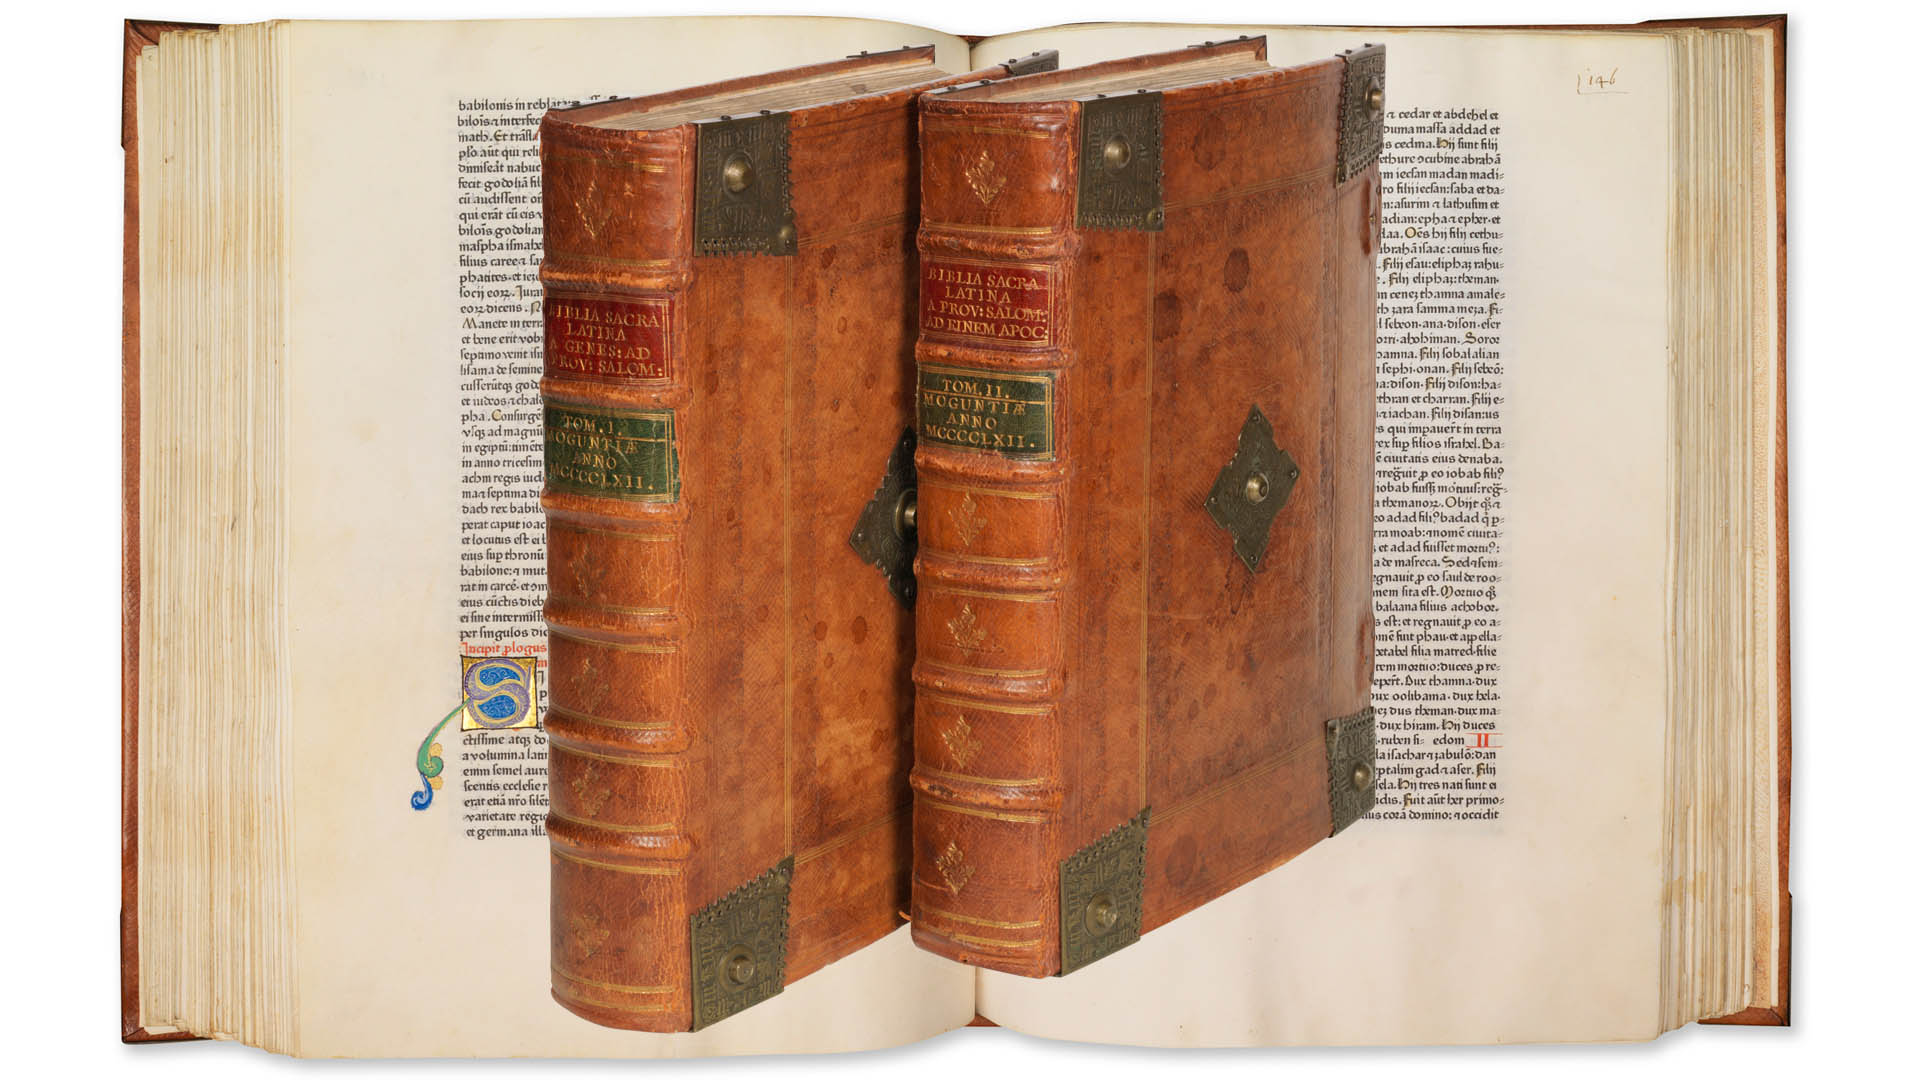 Bei einer Auktion in Hamburg wechselte eine Bibel von 1462 aus der Druckerei Gutenberg für eine Million Euro den Besitzer